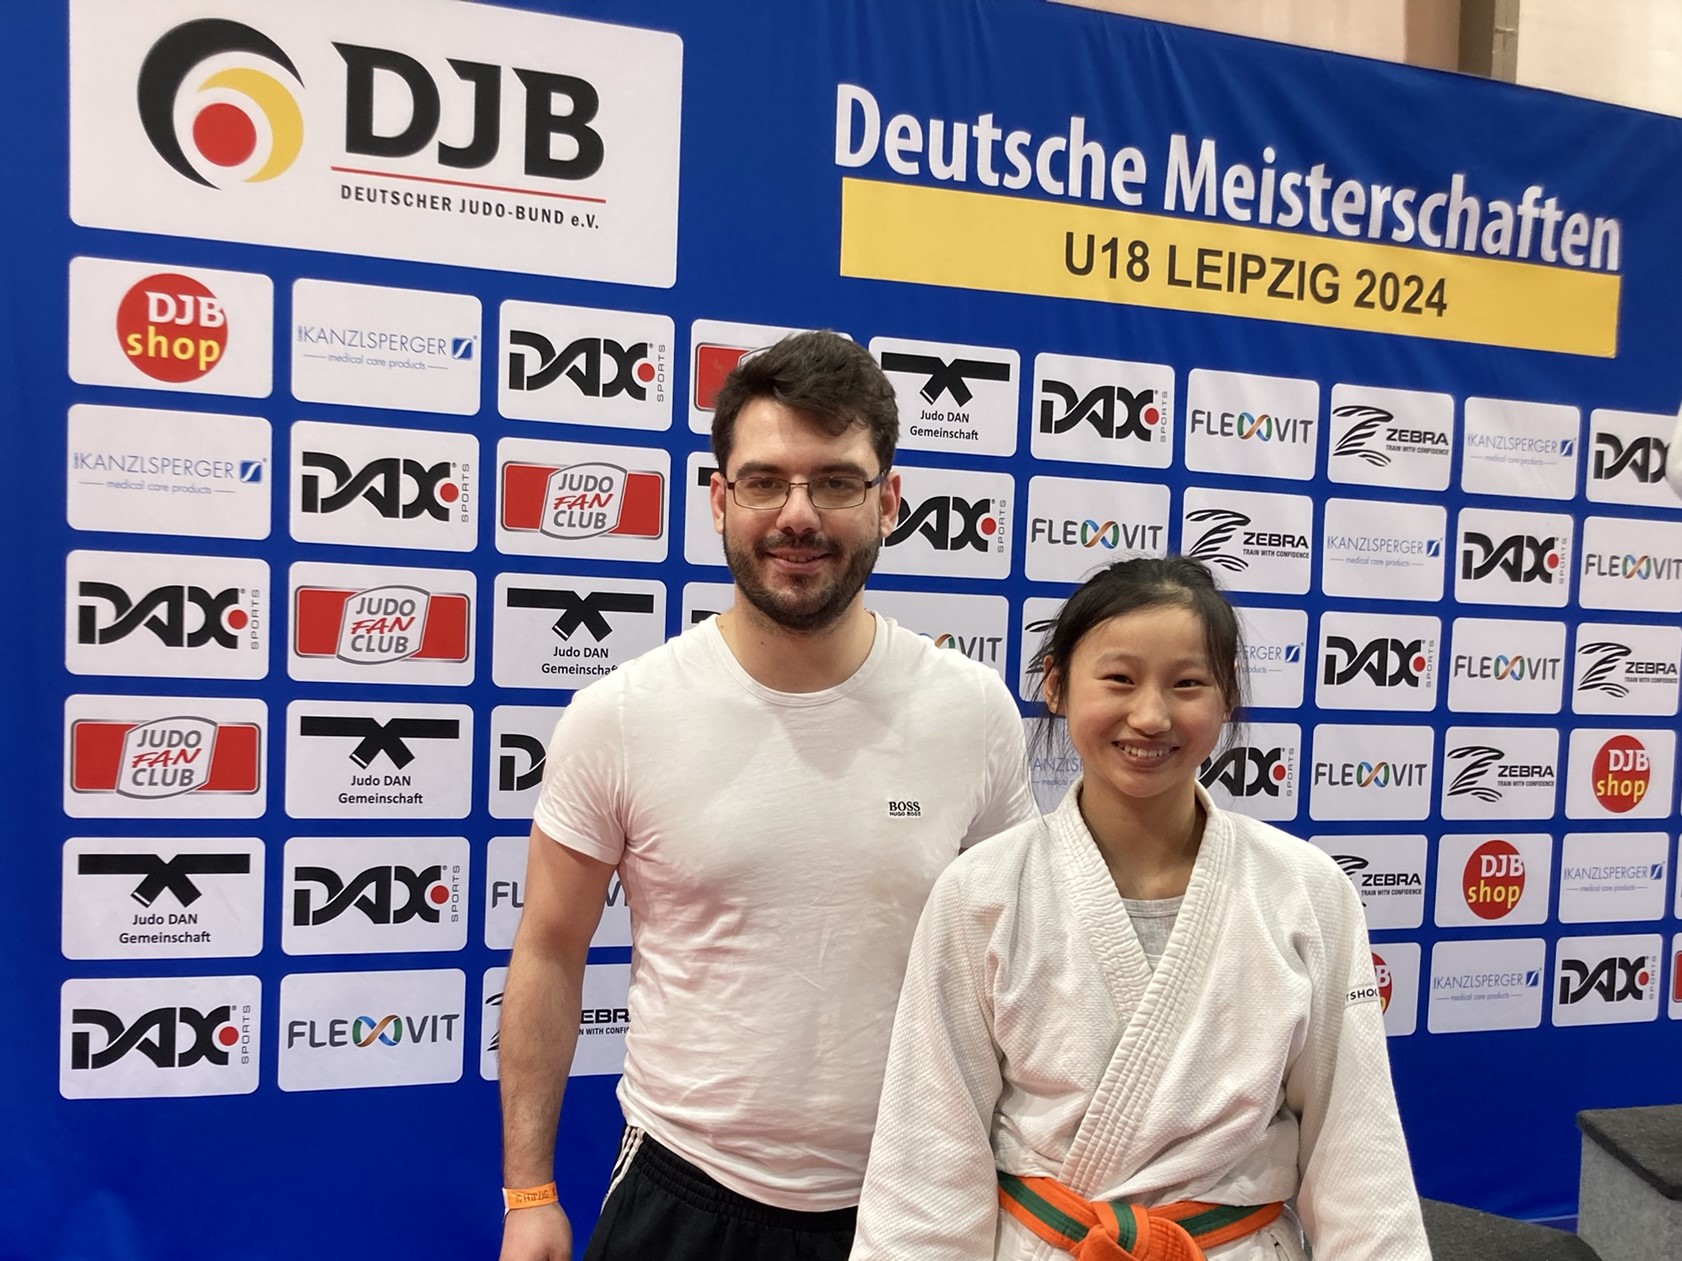 Deutsche Meisterschaft: Chen auf Platz 9